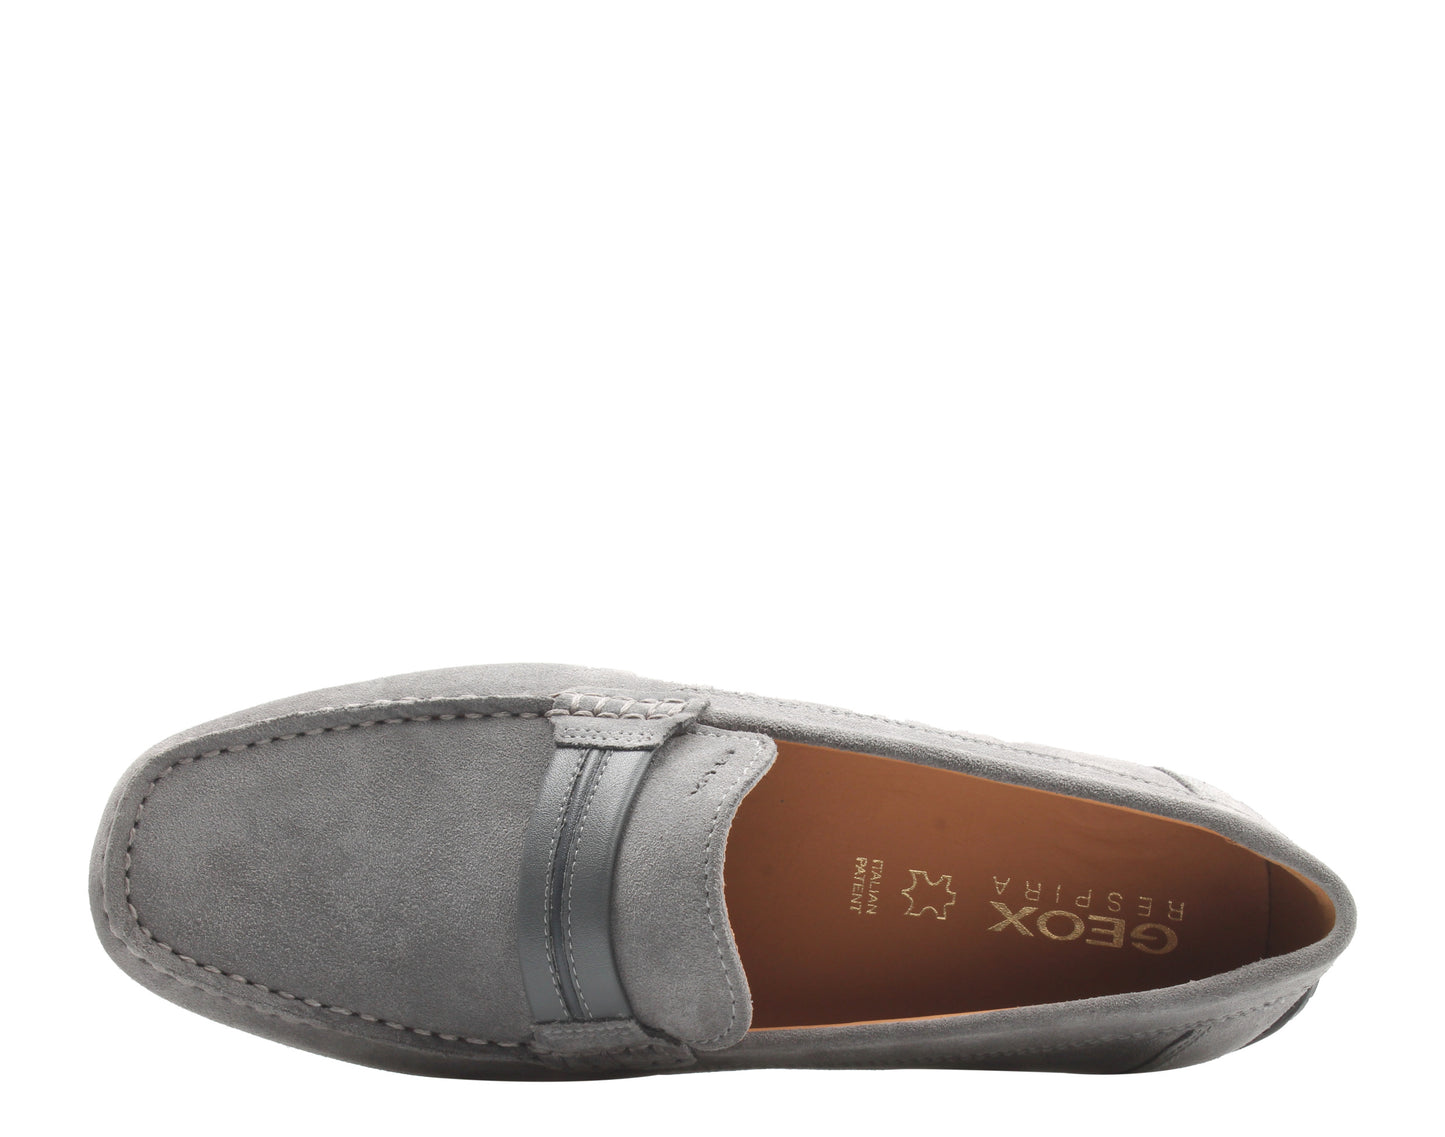 Geox Moner Mocassin Loafer Grey Suede Men's Shoes U0244A-00022-C1006